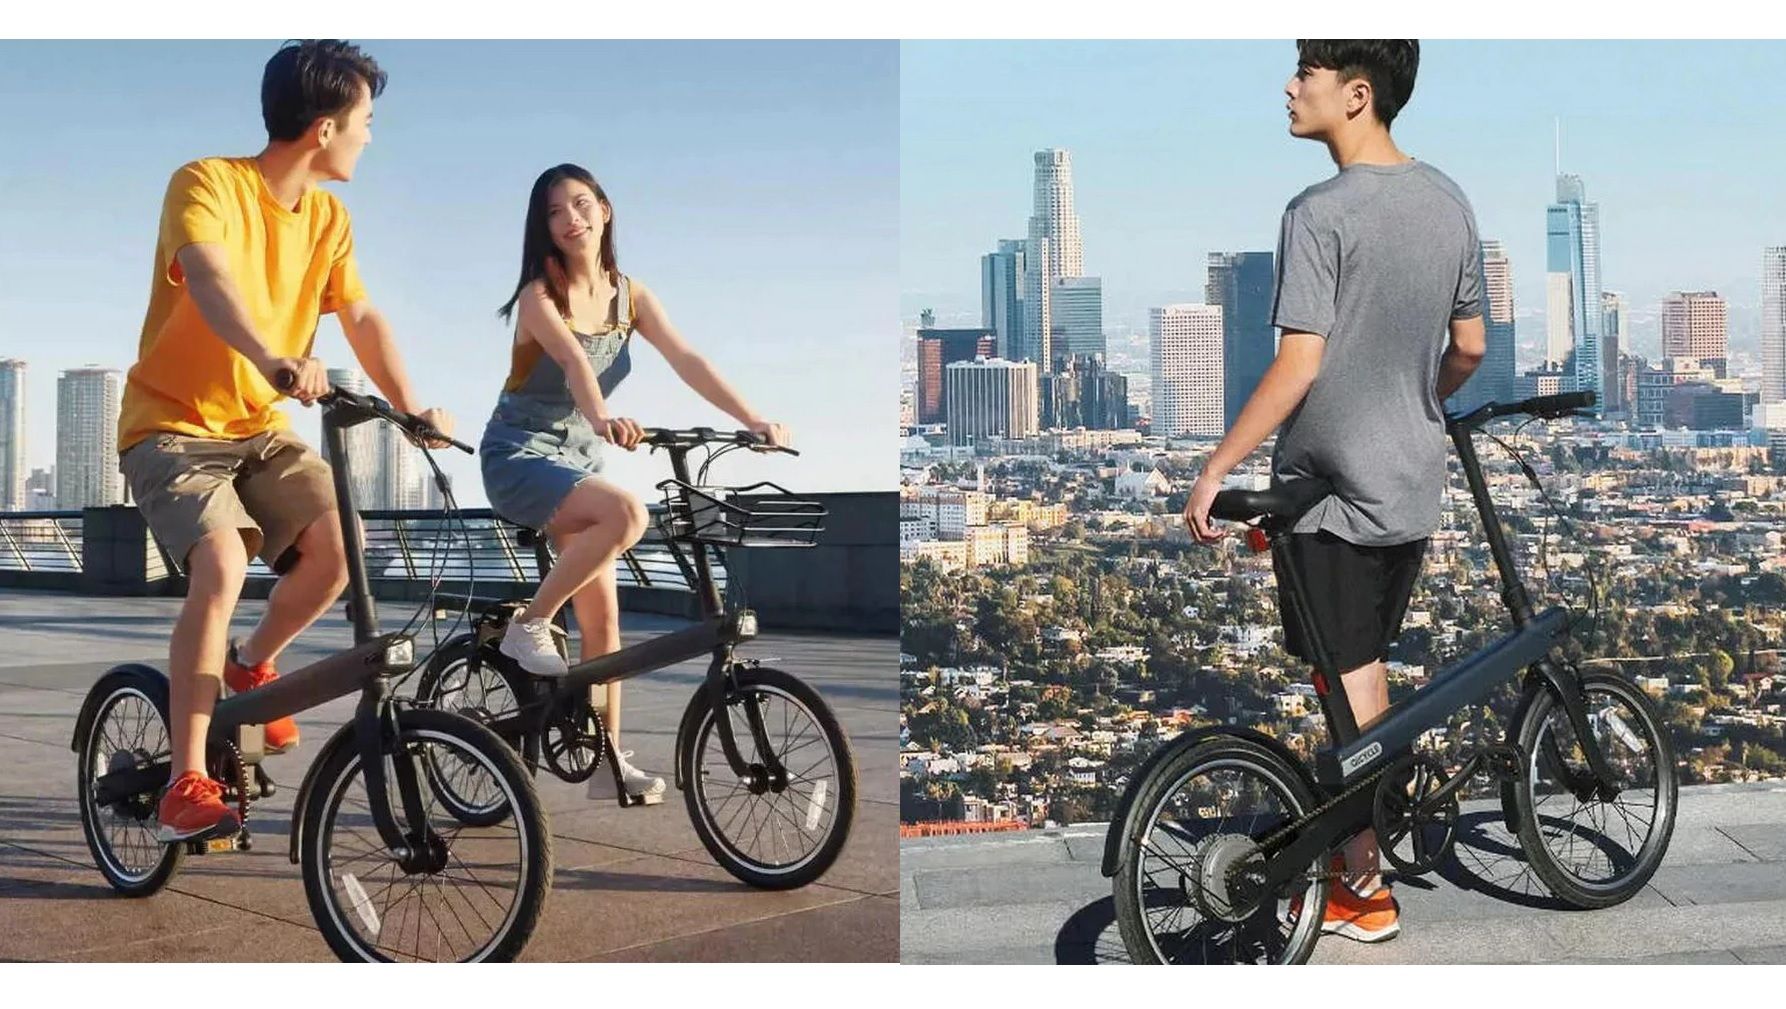 Oferta Qicycle TDP02Z, la nueva bicicleta eléctrica Xiaomi